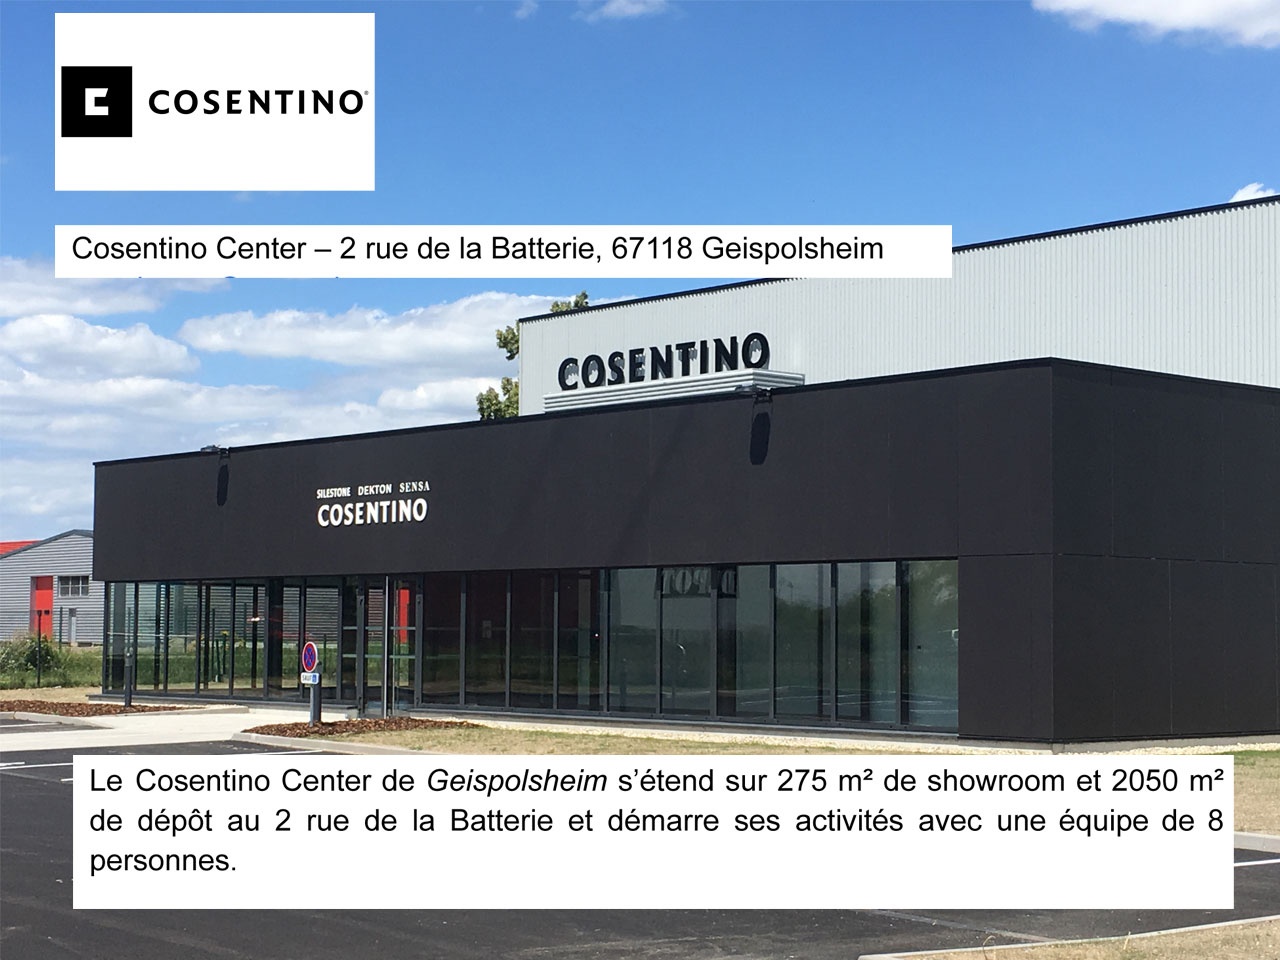 Le groupe espagnol Cosentino ouvre son 6ème Center à Geispolsheim, à proximité de Strasbourg